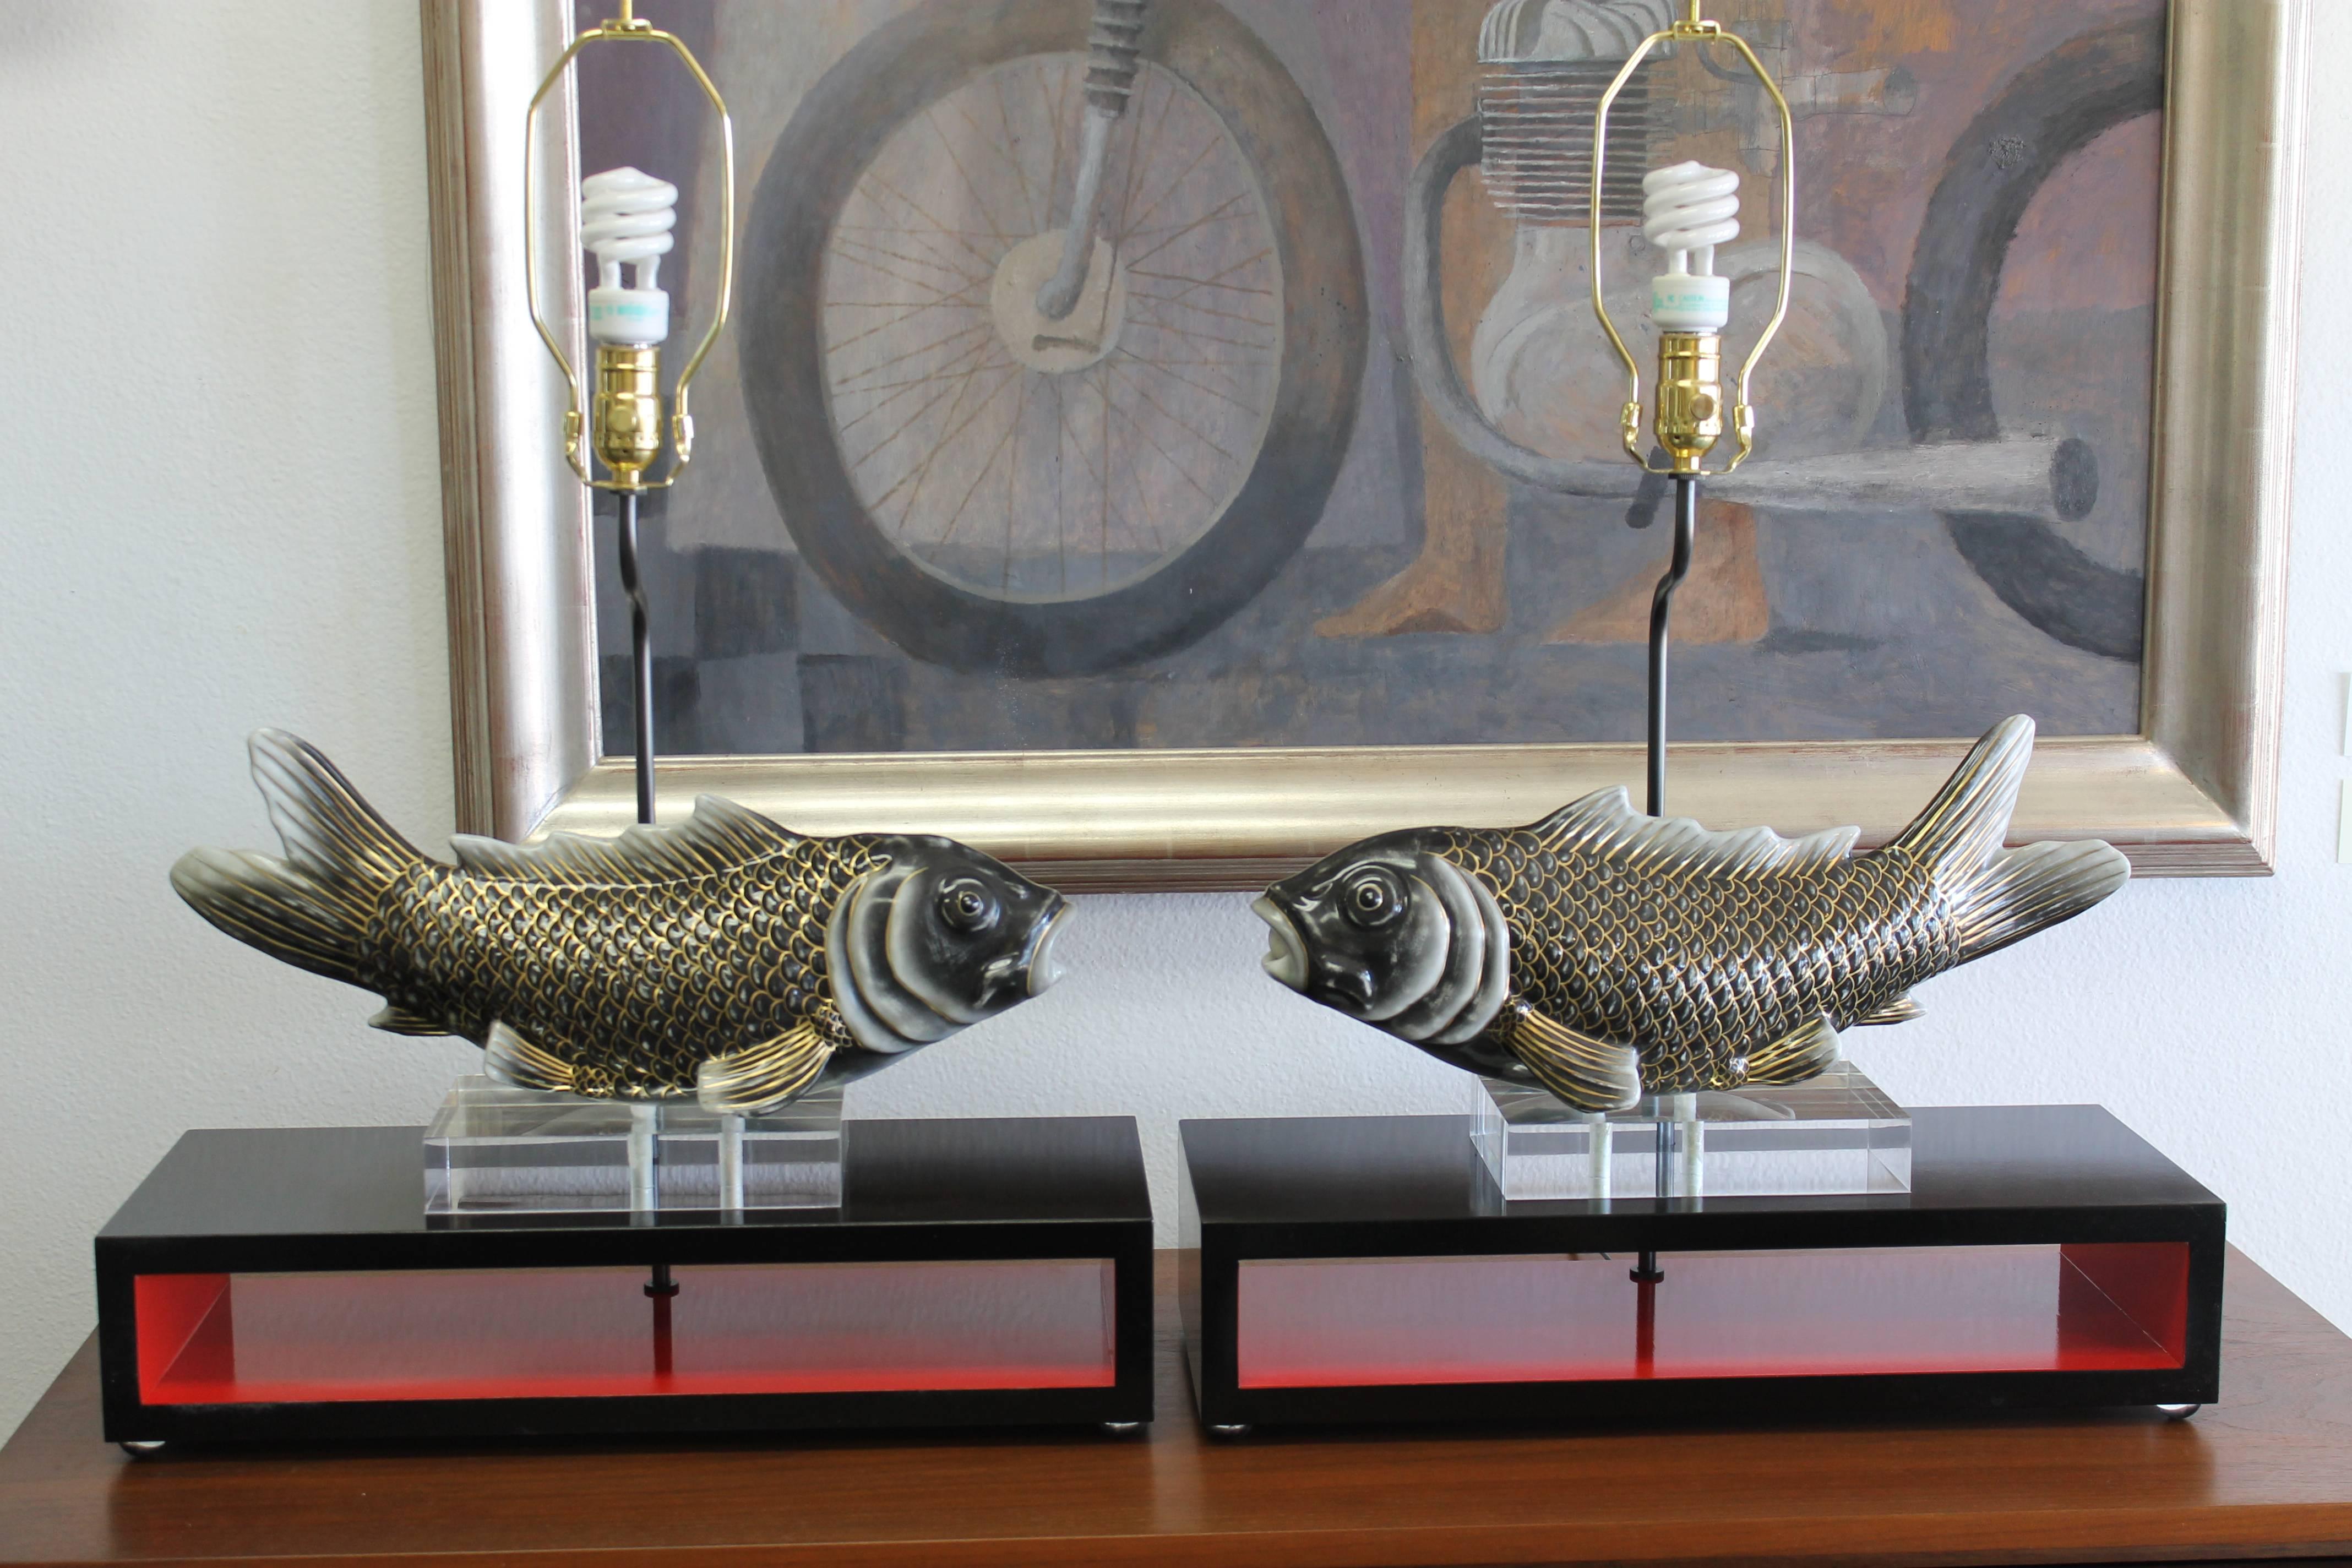 American Studio Designed Koi Fish Lamps